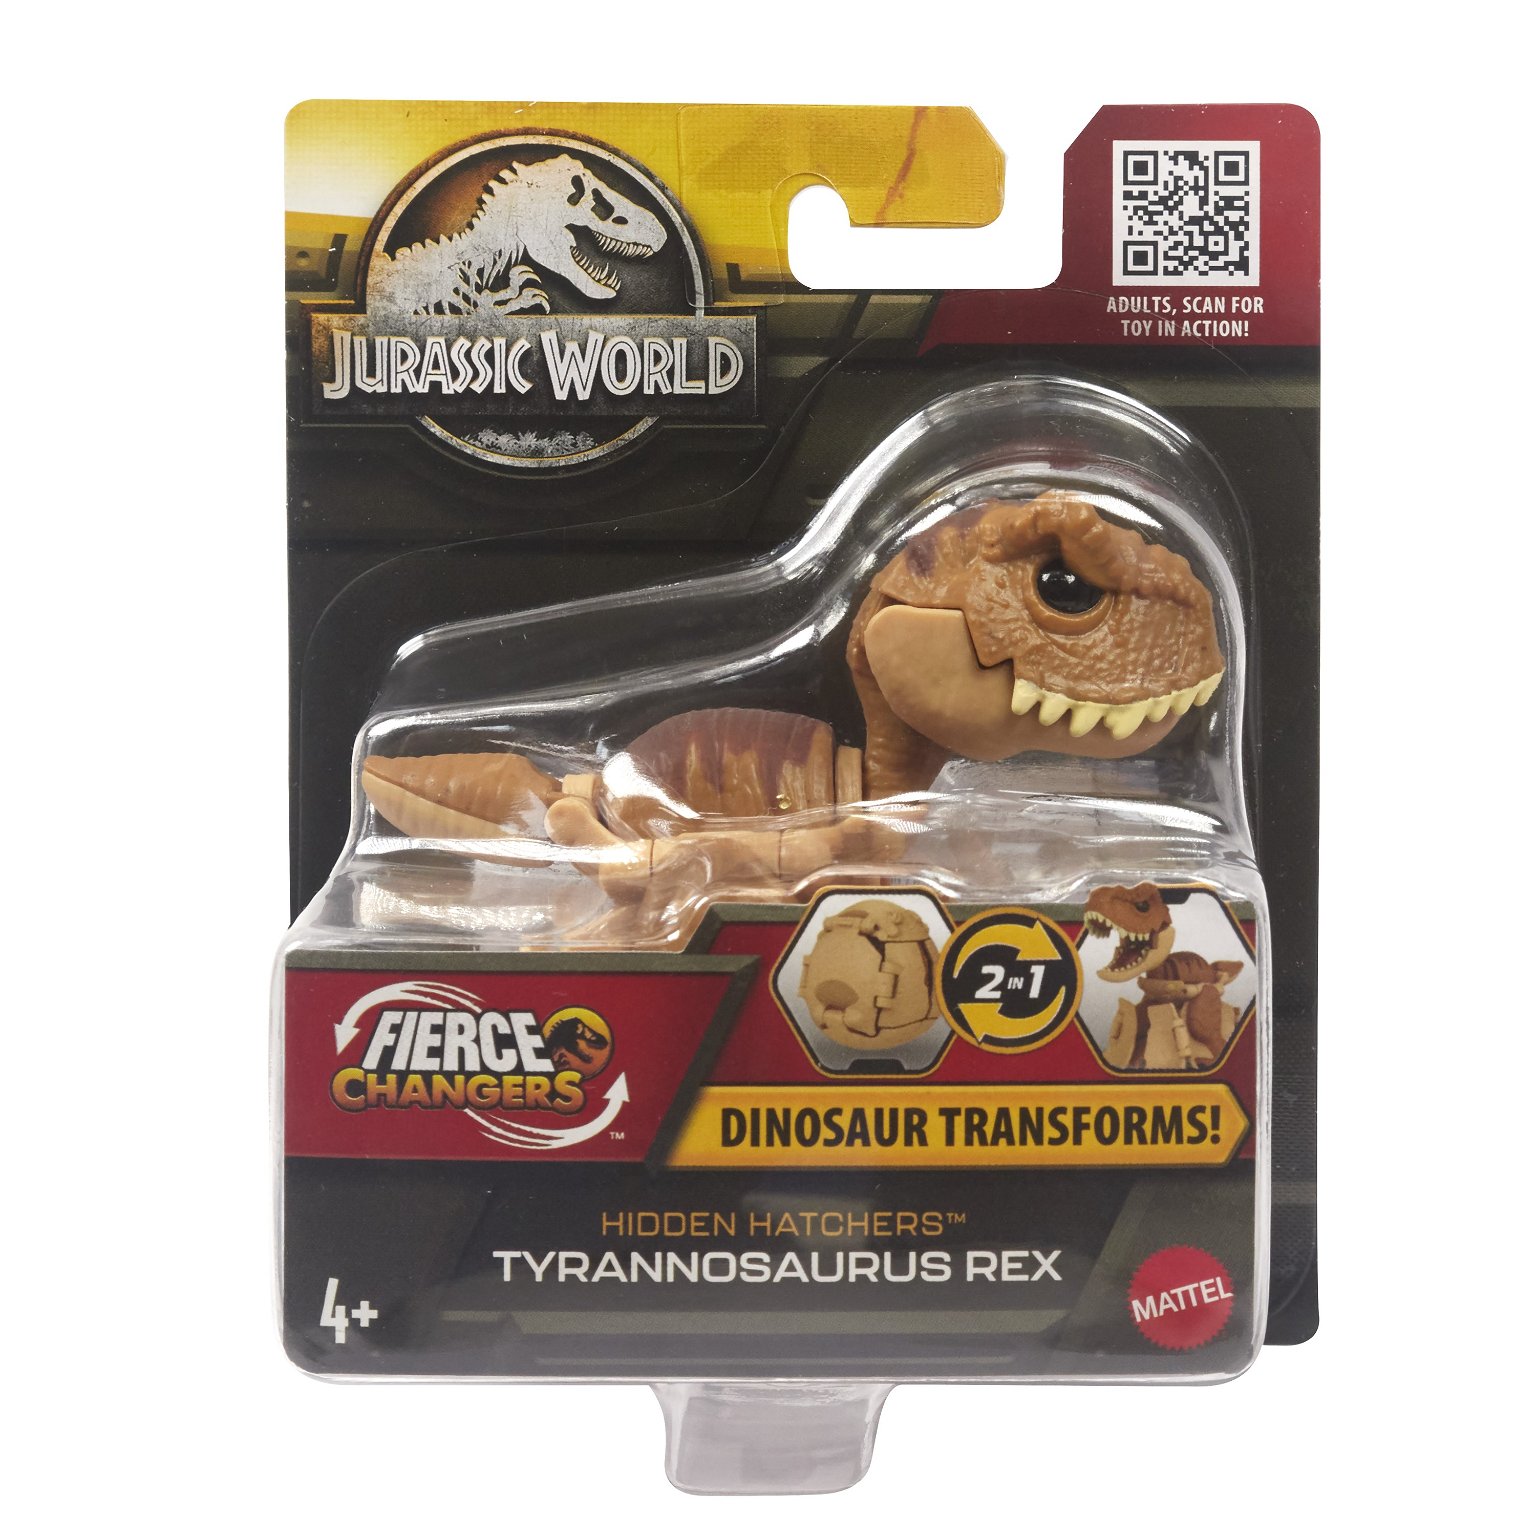 Jurassic world rinkinys: Nuožmūs pokyčiai – paslėpta perykla, įvairių dizainų - 5